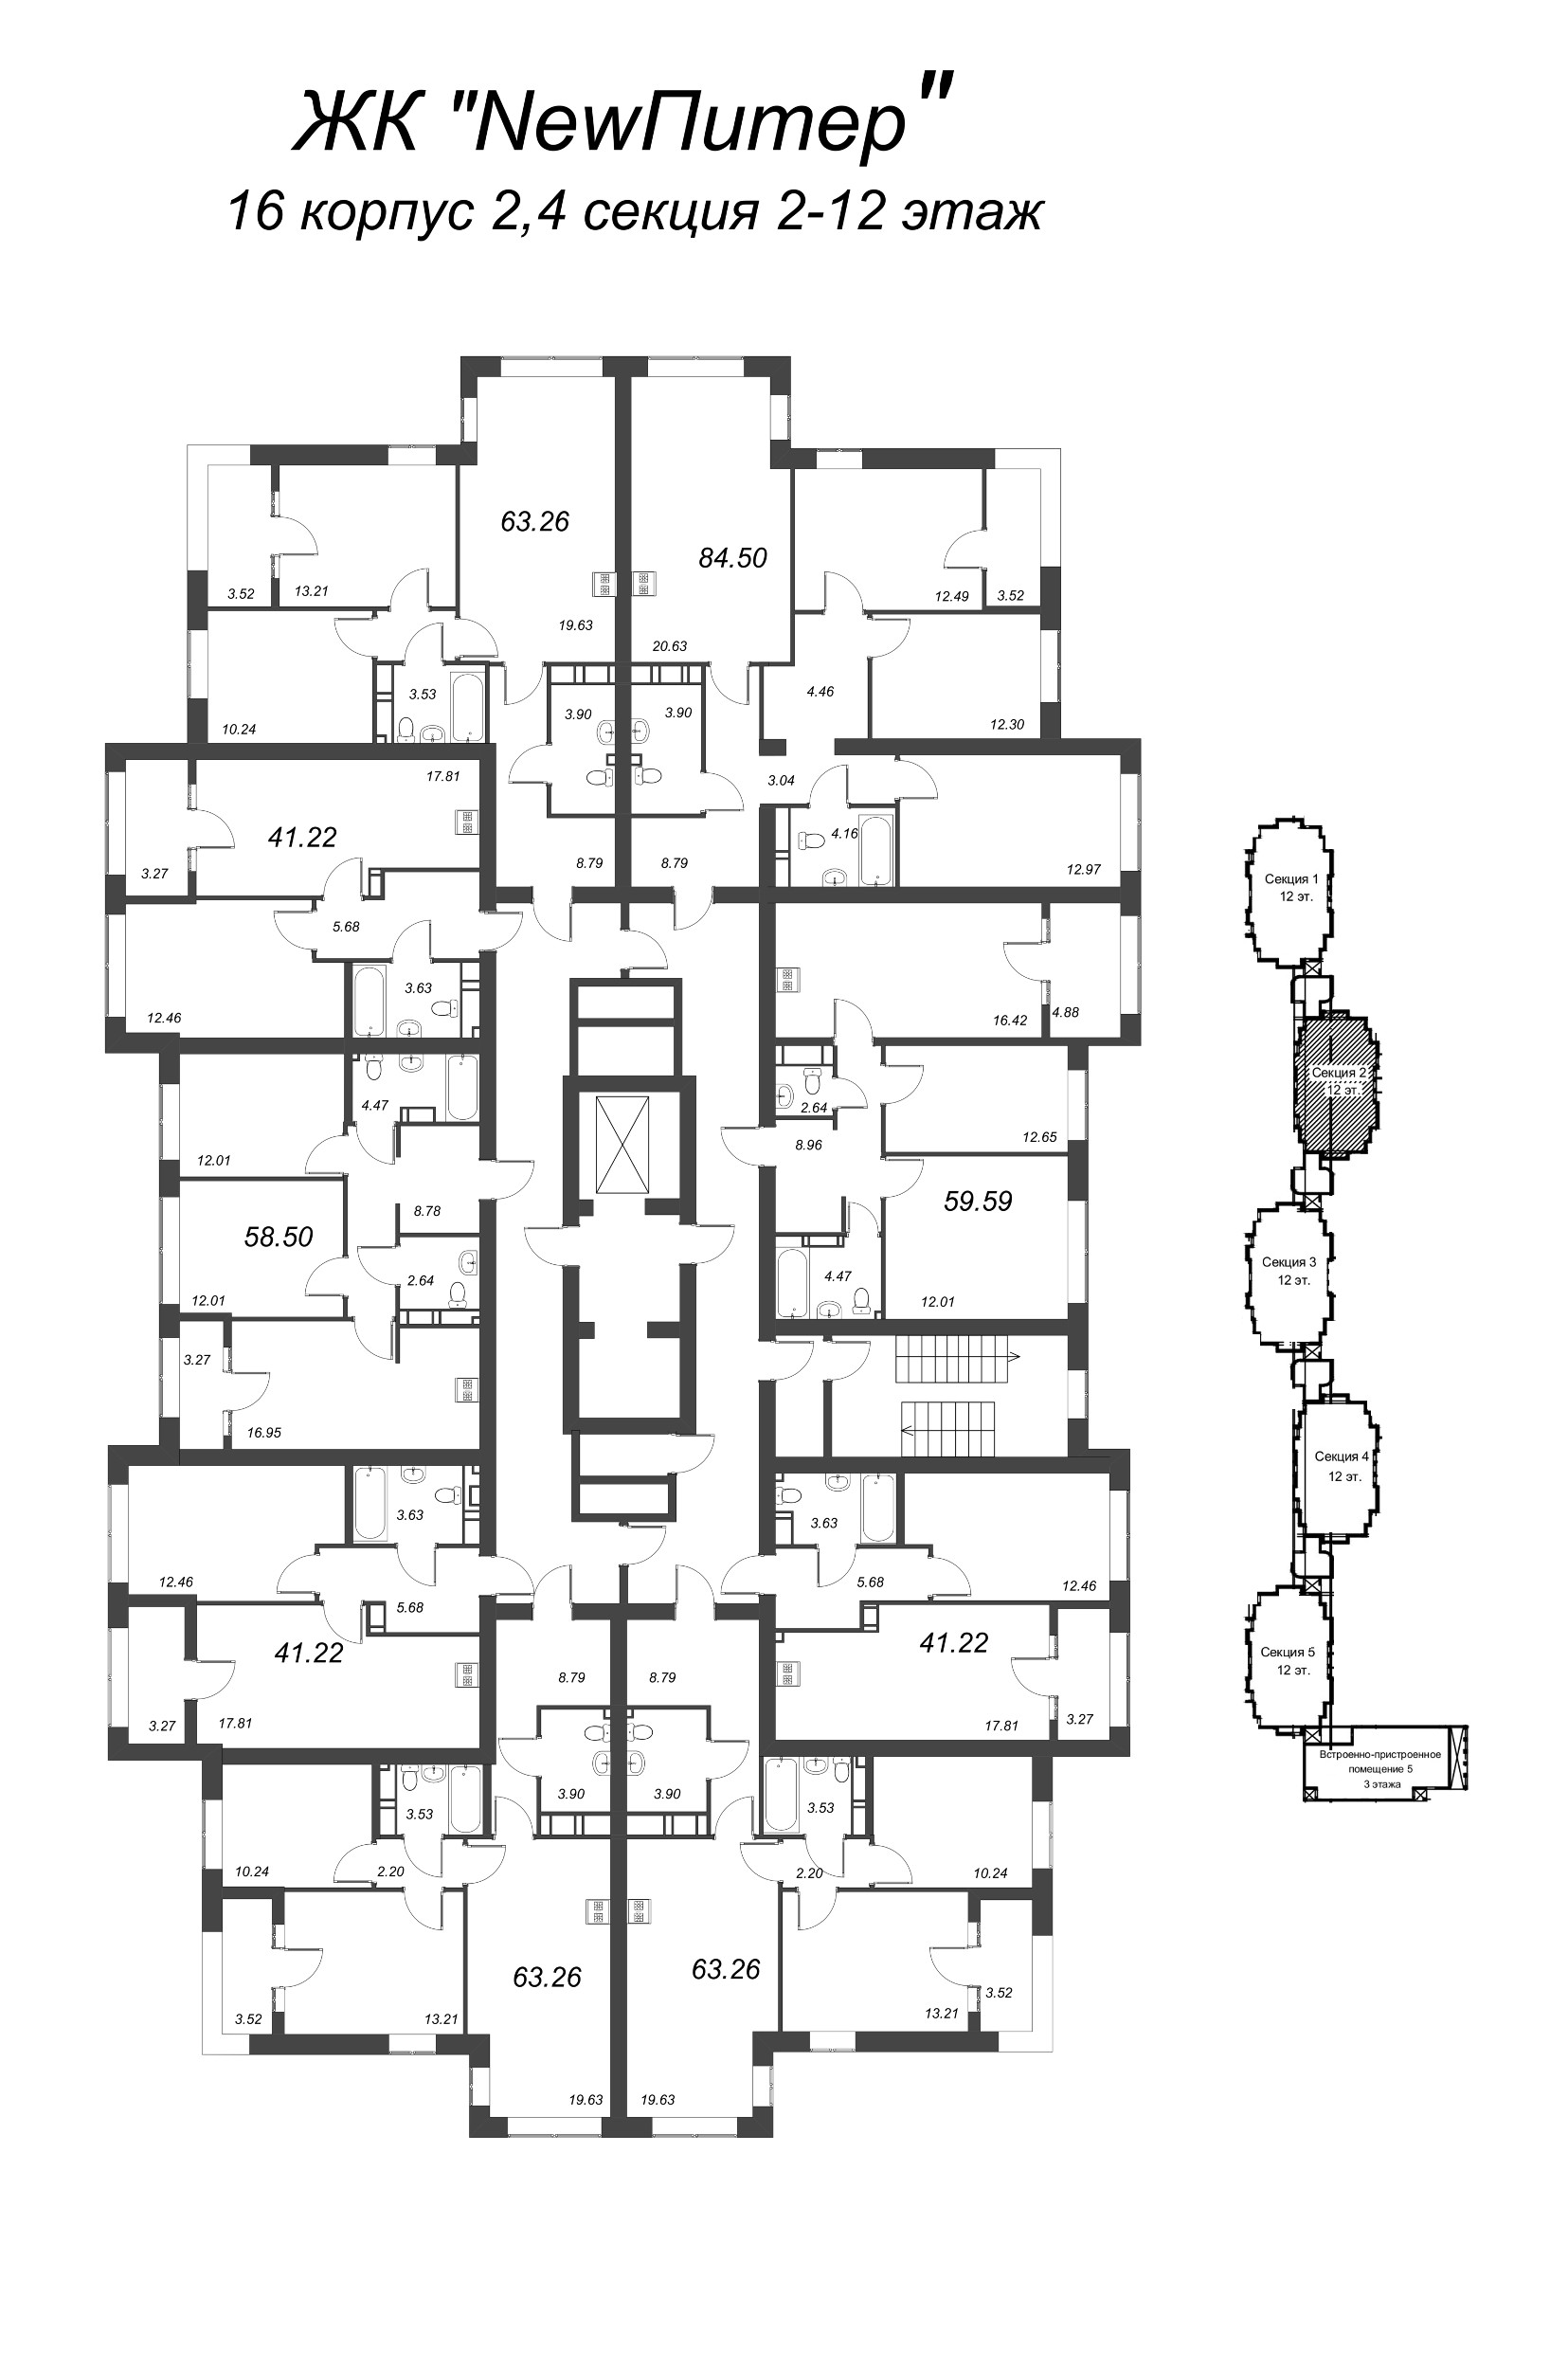 3-комнатная (Евро) квартира, 64 м² в ЖК "NewПитер 2.0" - планировка этажа